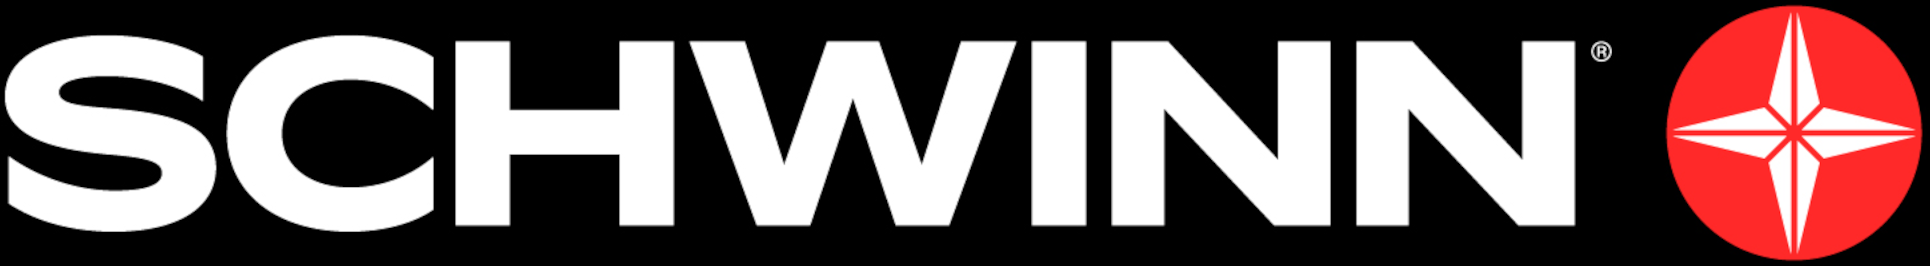 2021 Schwinn Logo Header png APR2021.png